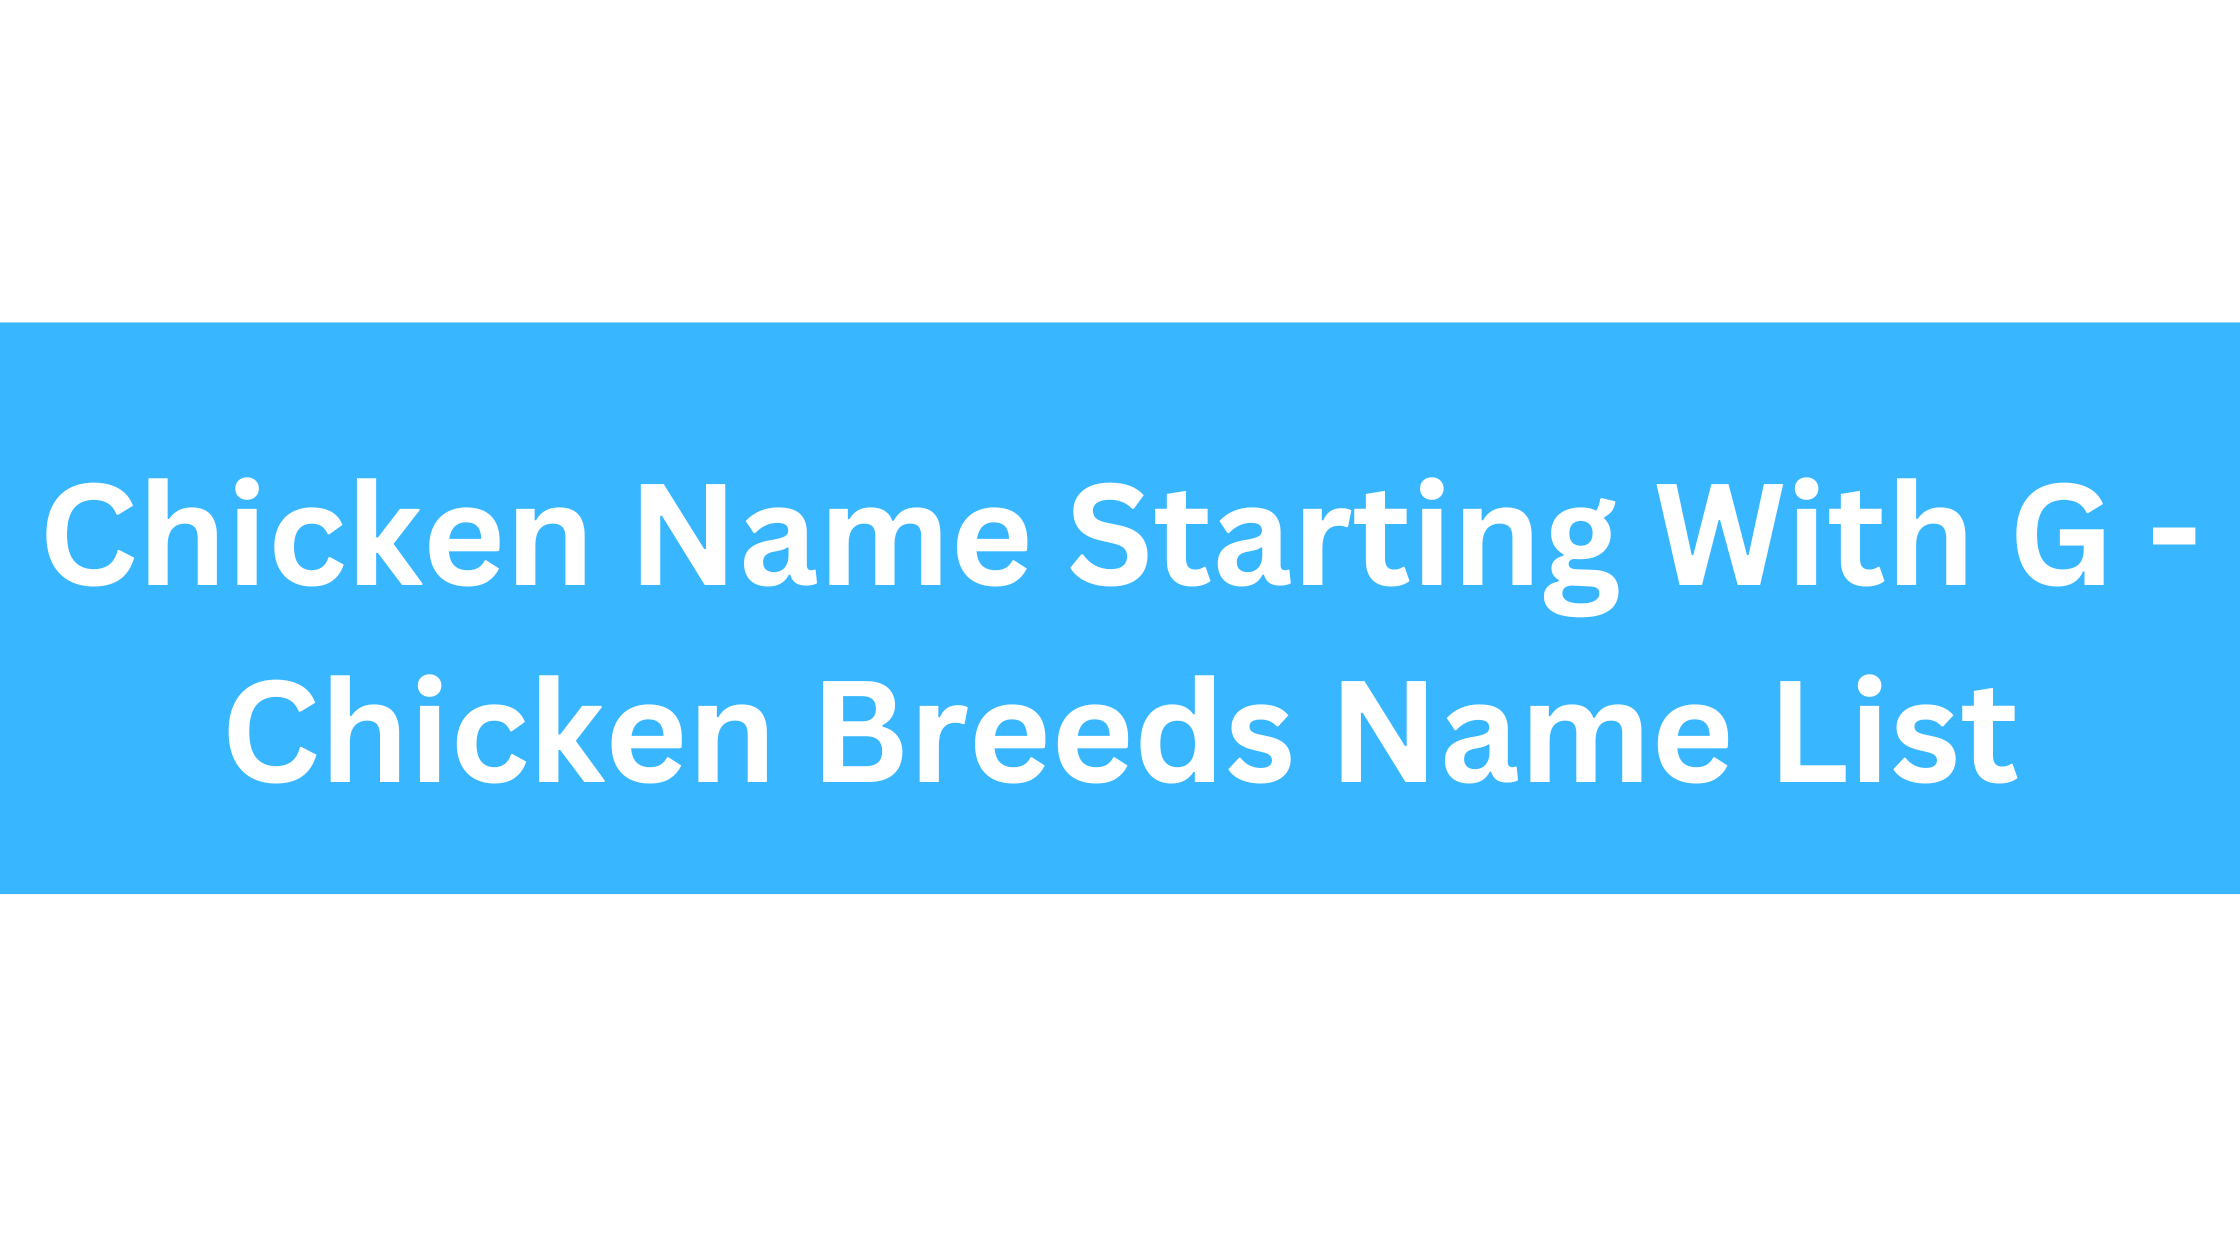 Chicken Breeds That Start With G